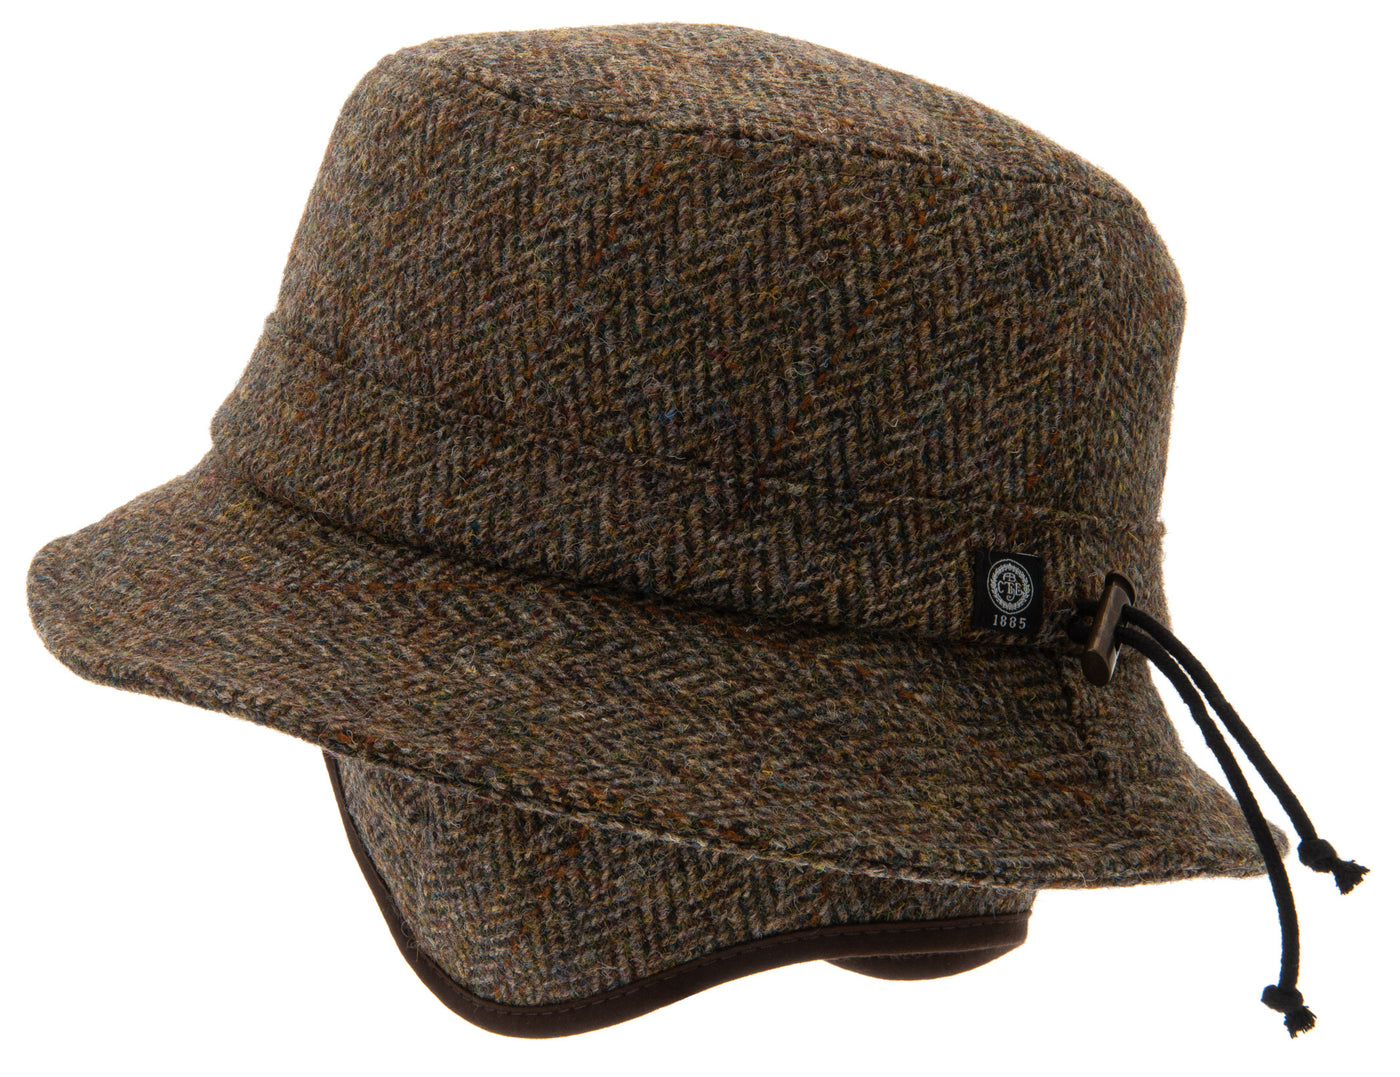 Green Walking hat, Bucket hat in Harris Tweed, fold-down ear patches